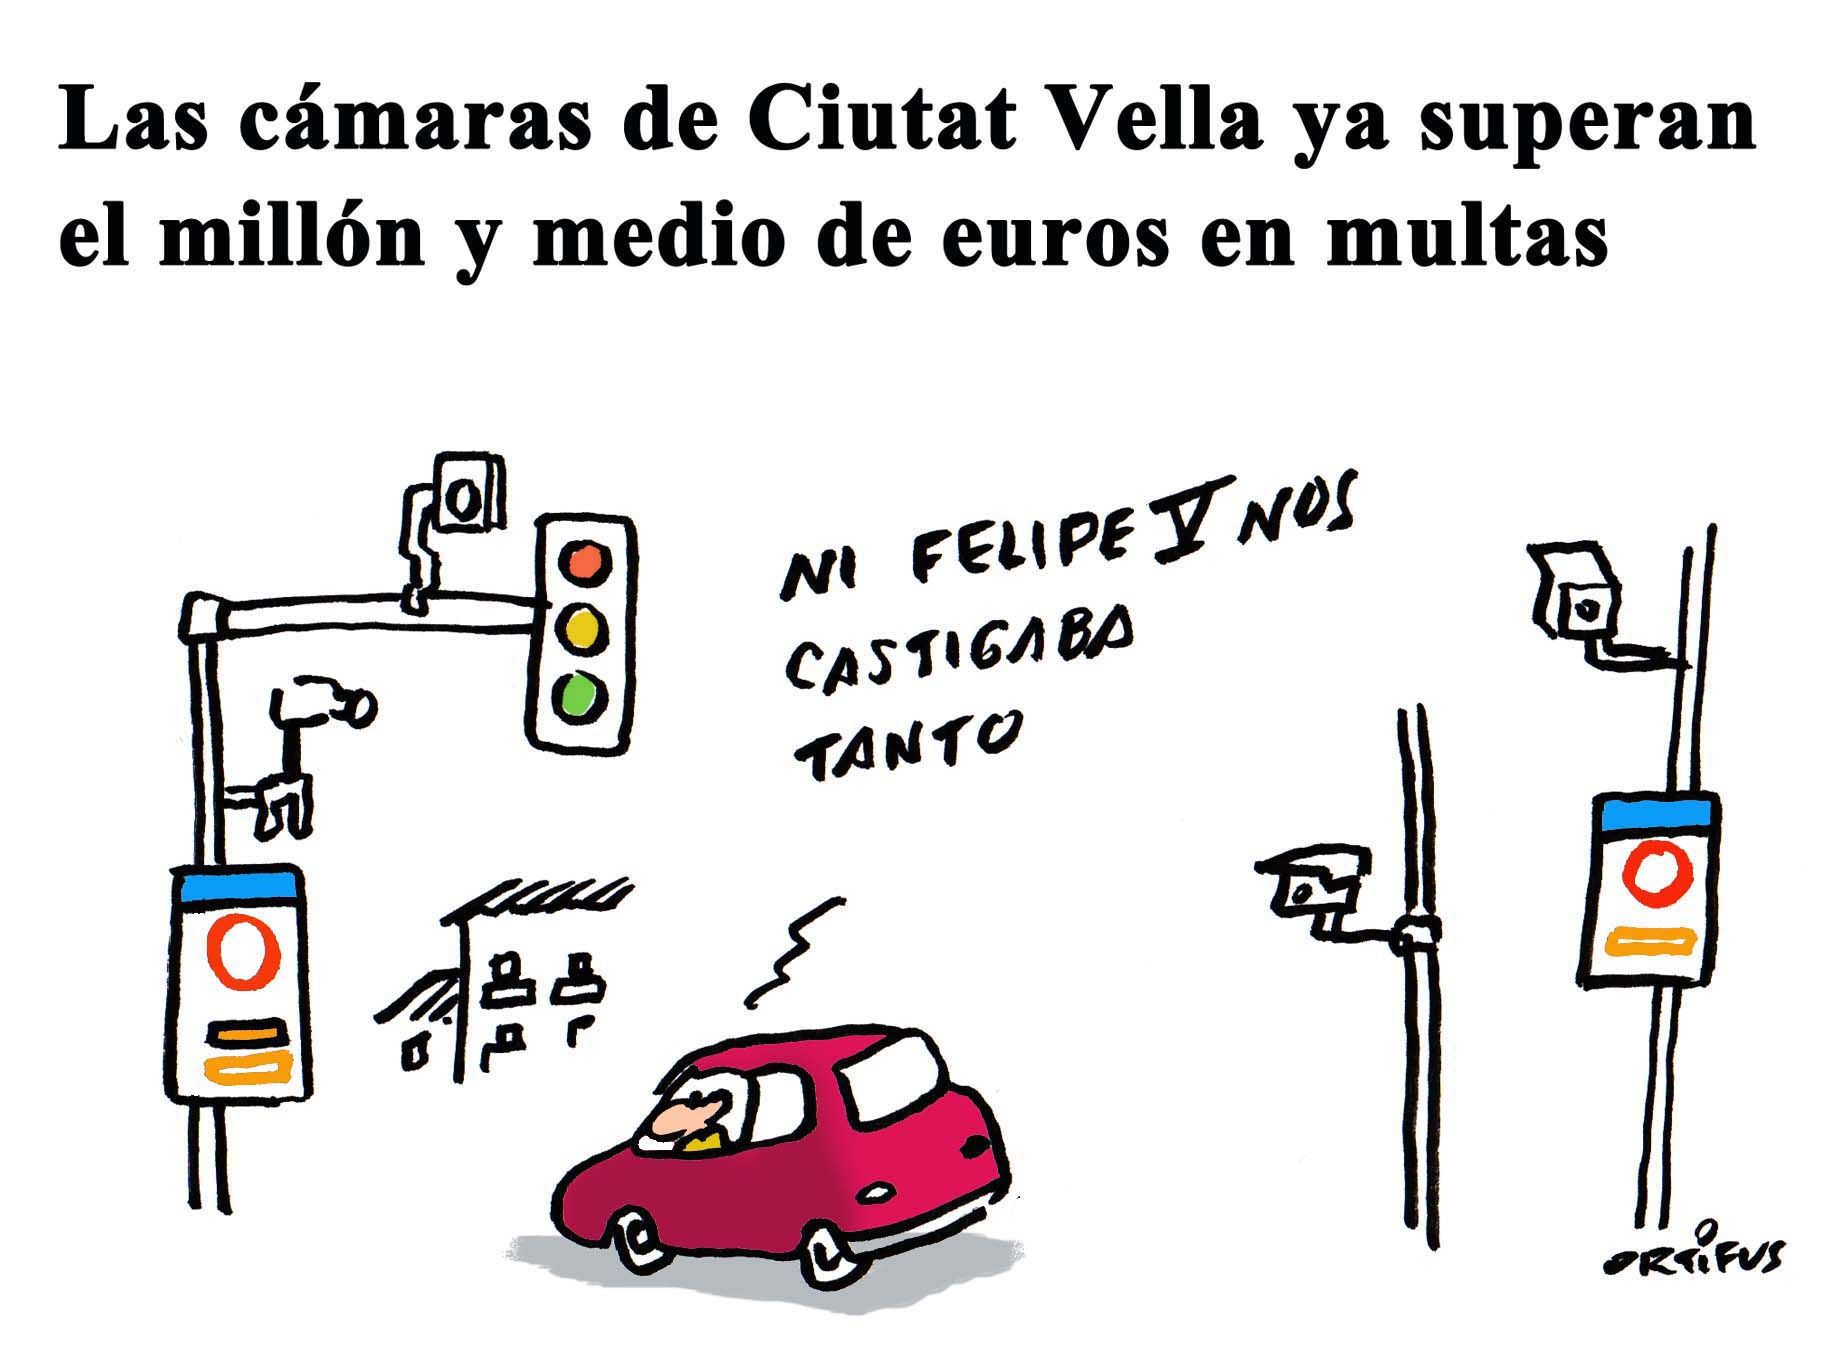 Las cámaras de Ciutat Vella ya superan el millón y medio de euros en multas